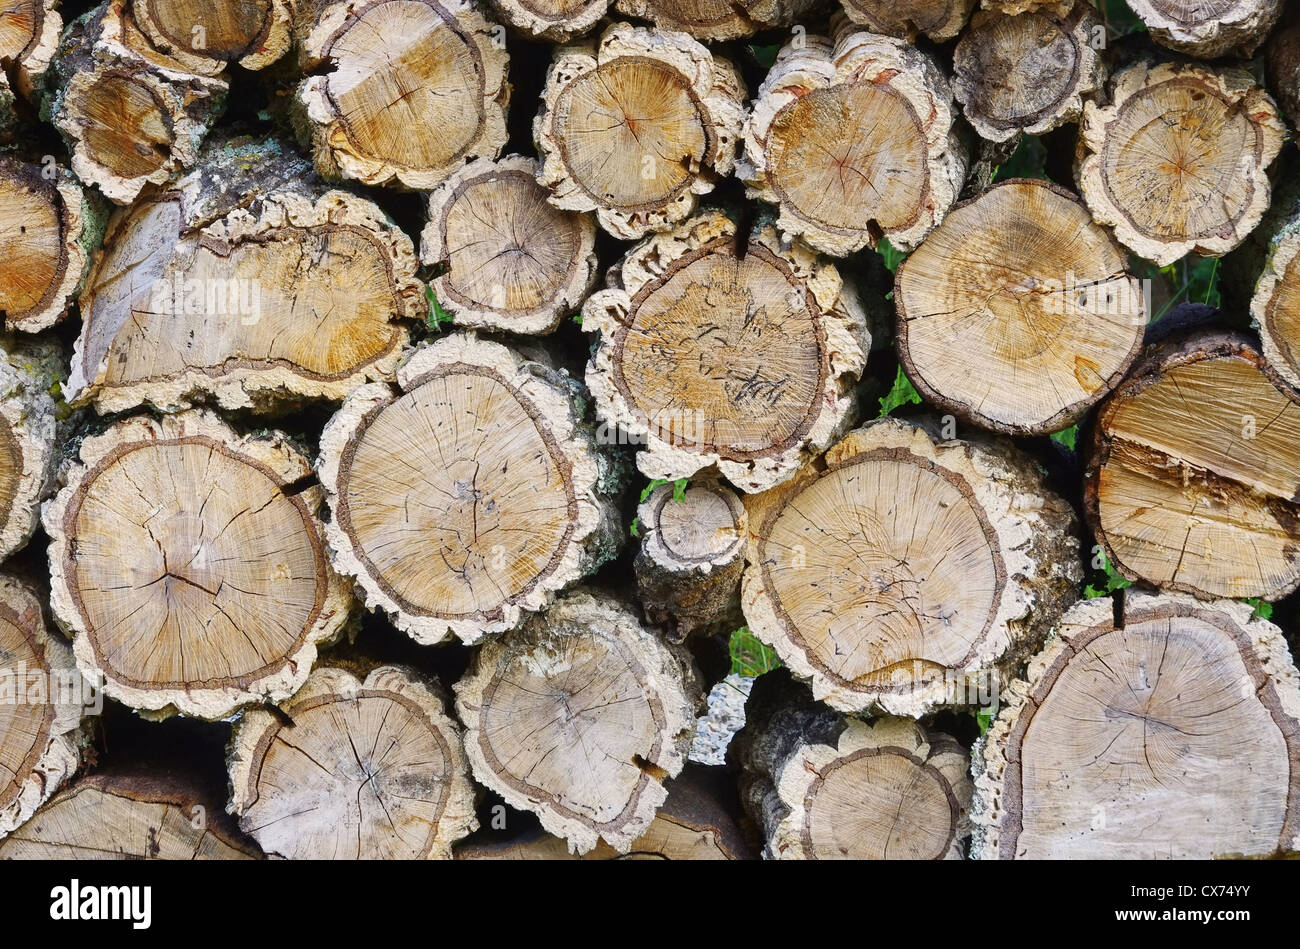 Holzstapel Korkeiche - pile de bois de chêne liège 01 Banque D'Images